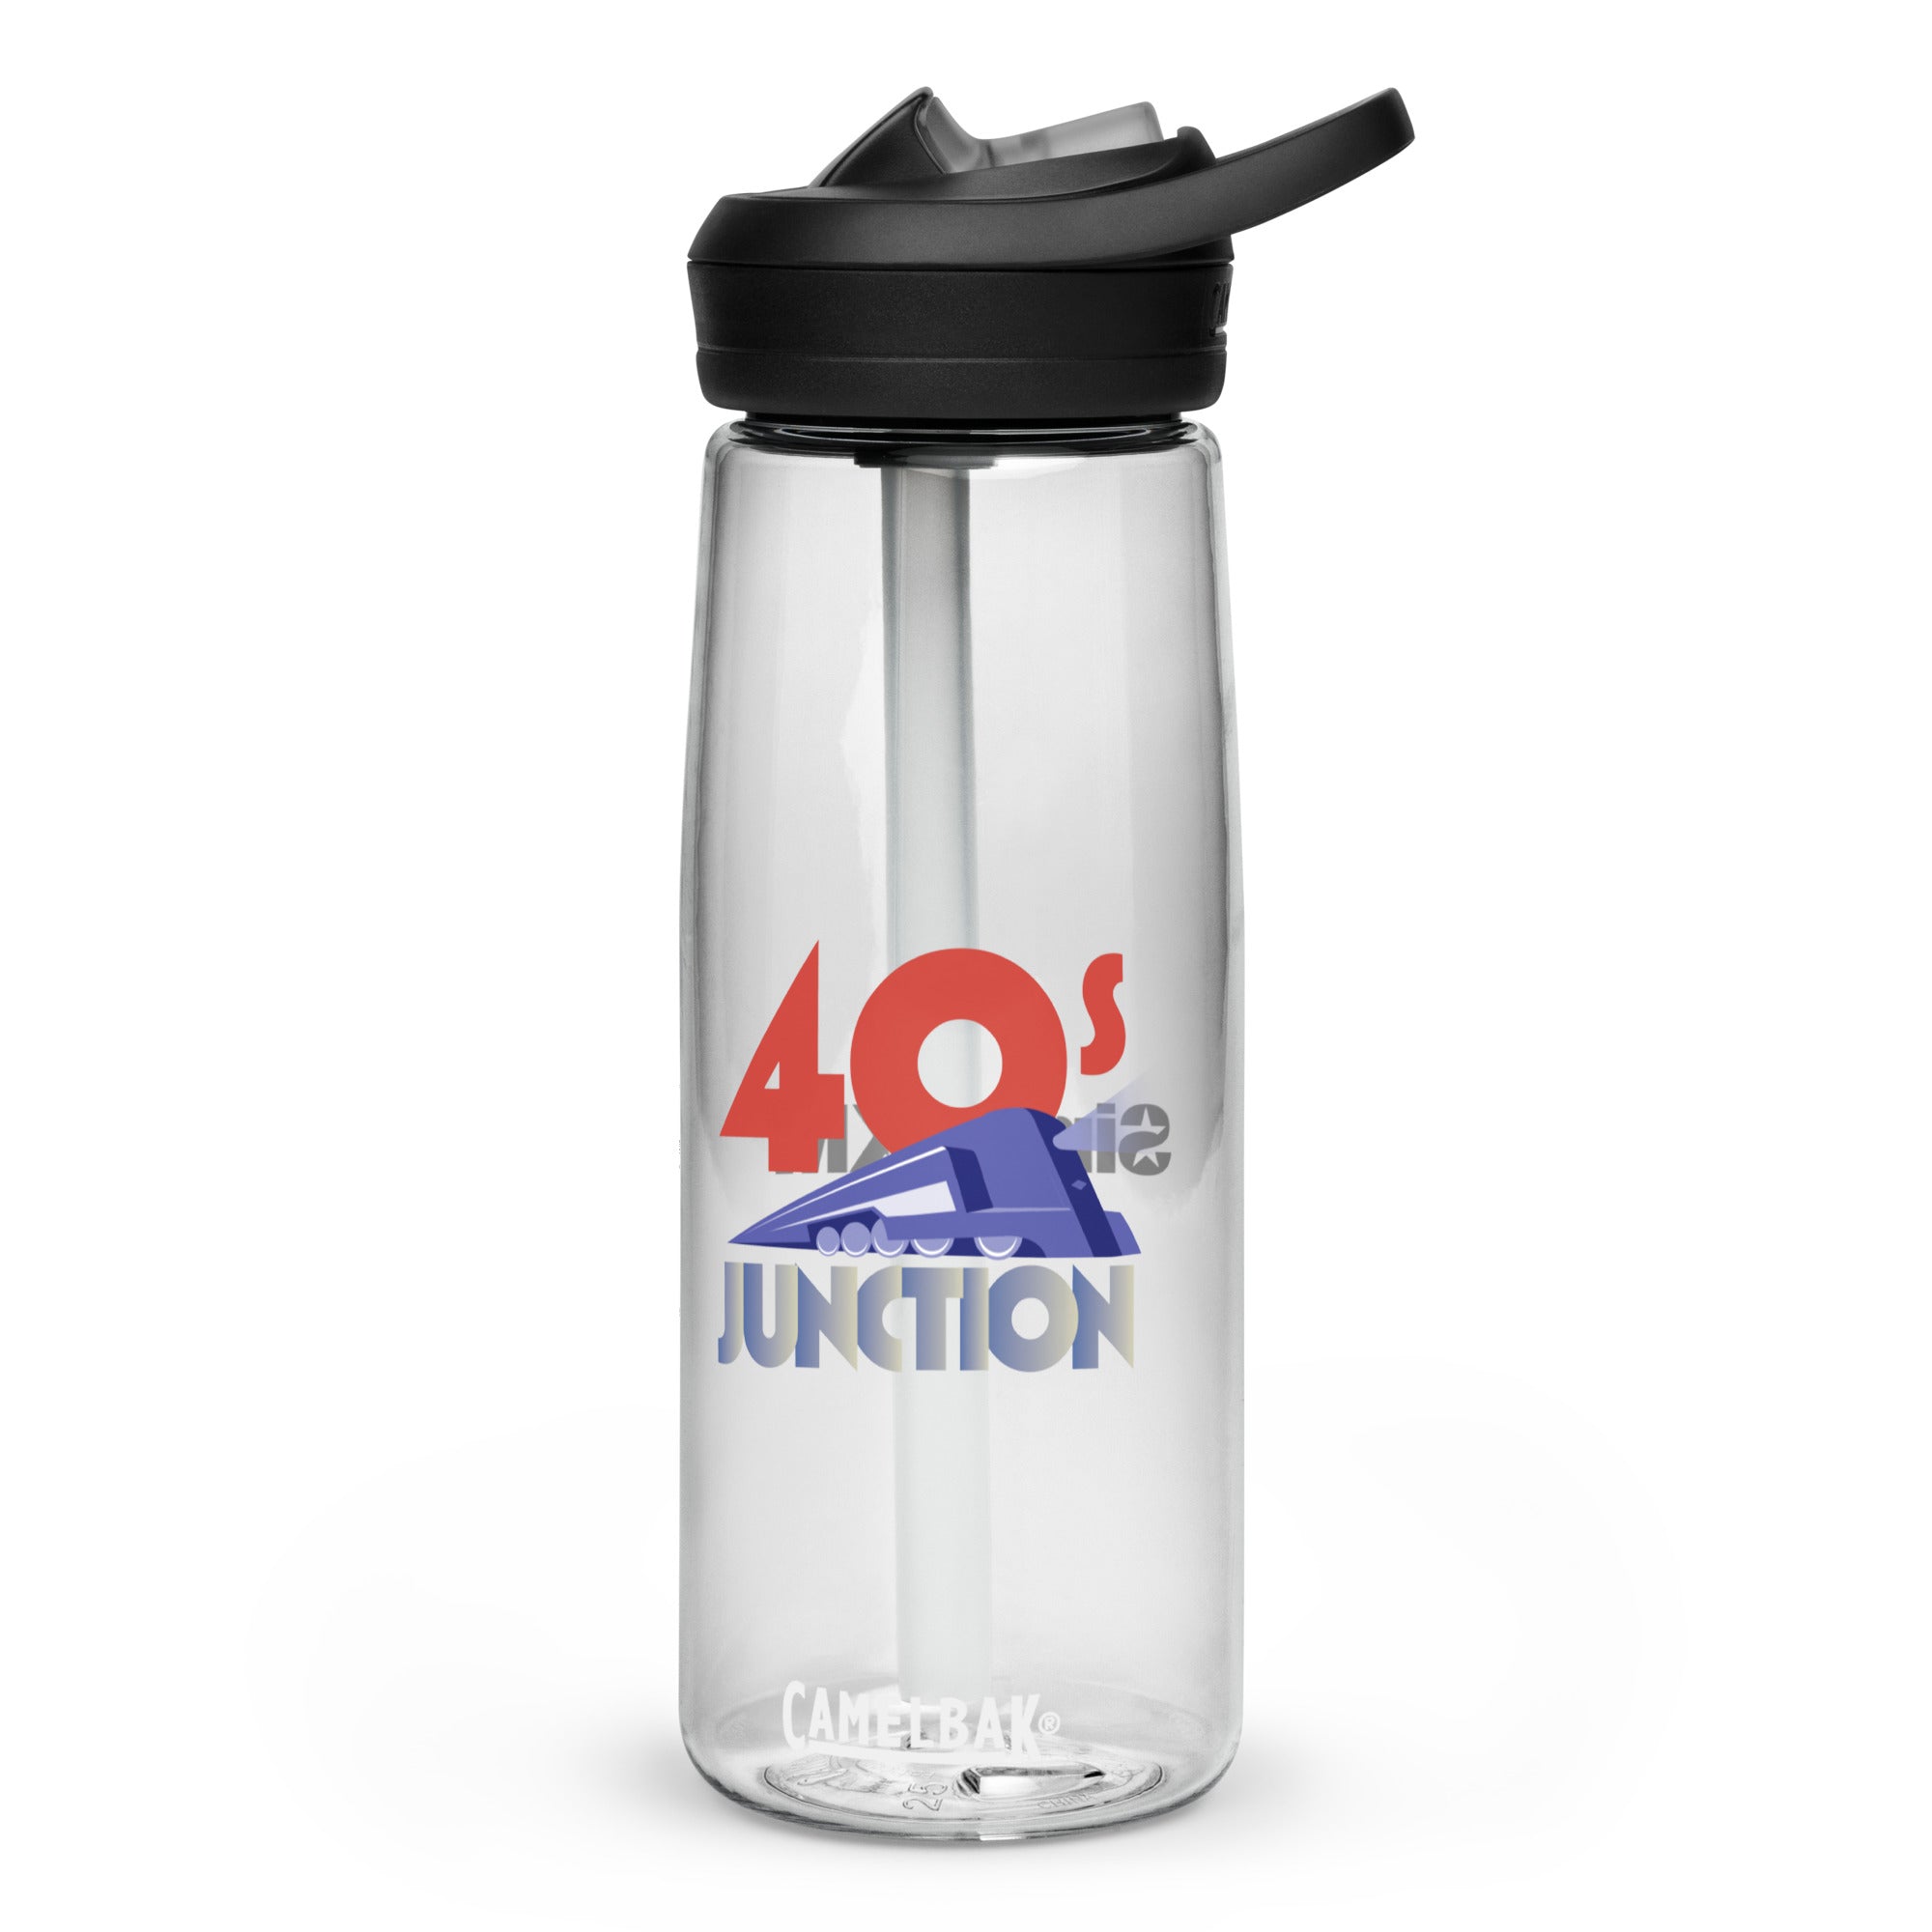 40s Junction: CamelBak Eddy®+ Sports Bottle